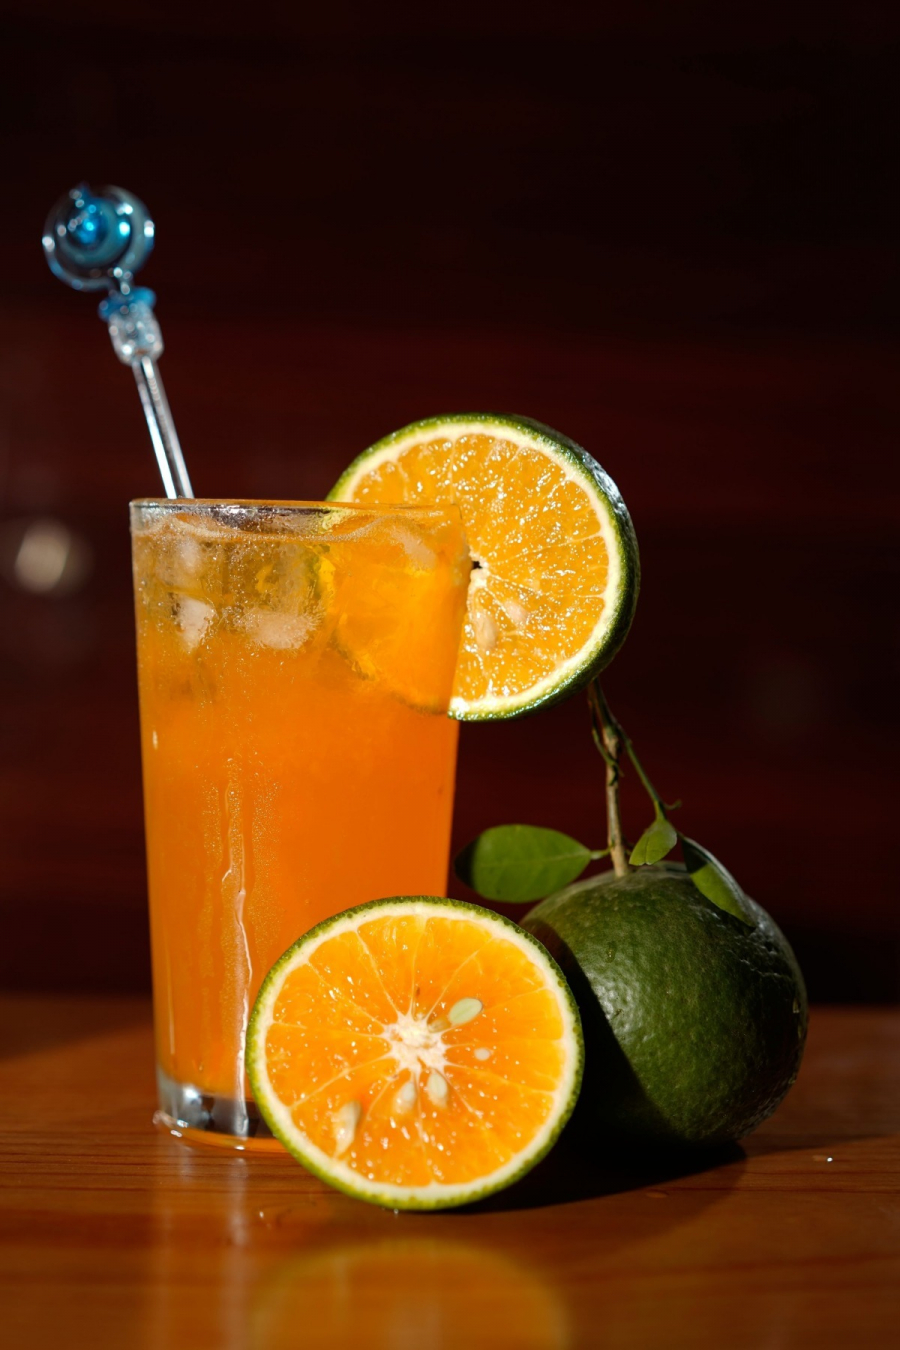 Cách Uống nước cam không hại dà dày, cứ chọn đúng 2 giờ vàng trong ngày để hấp thụ hết vitamin C